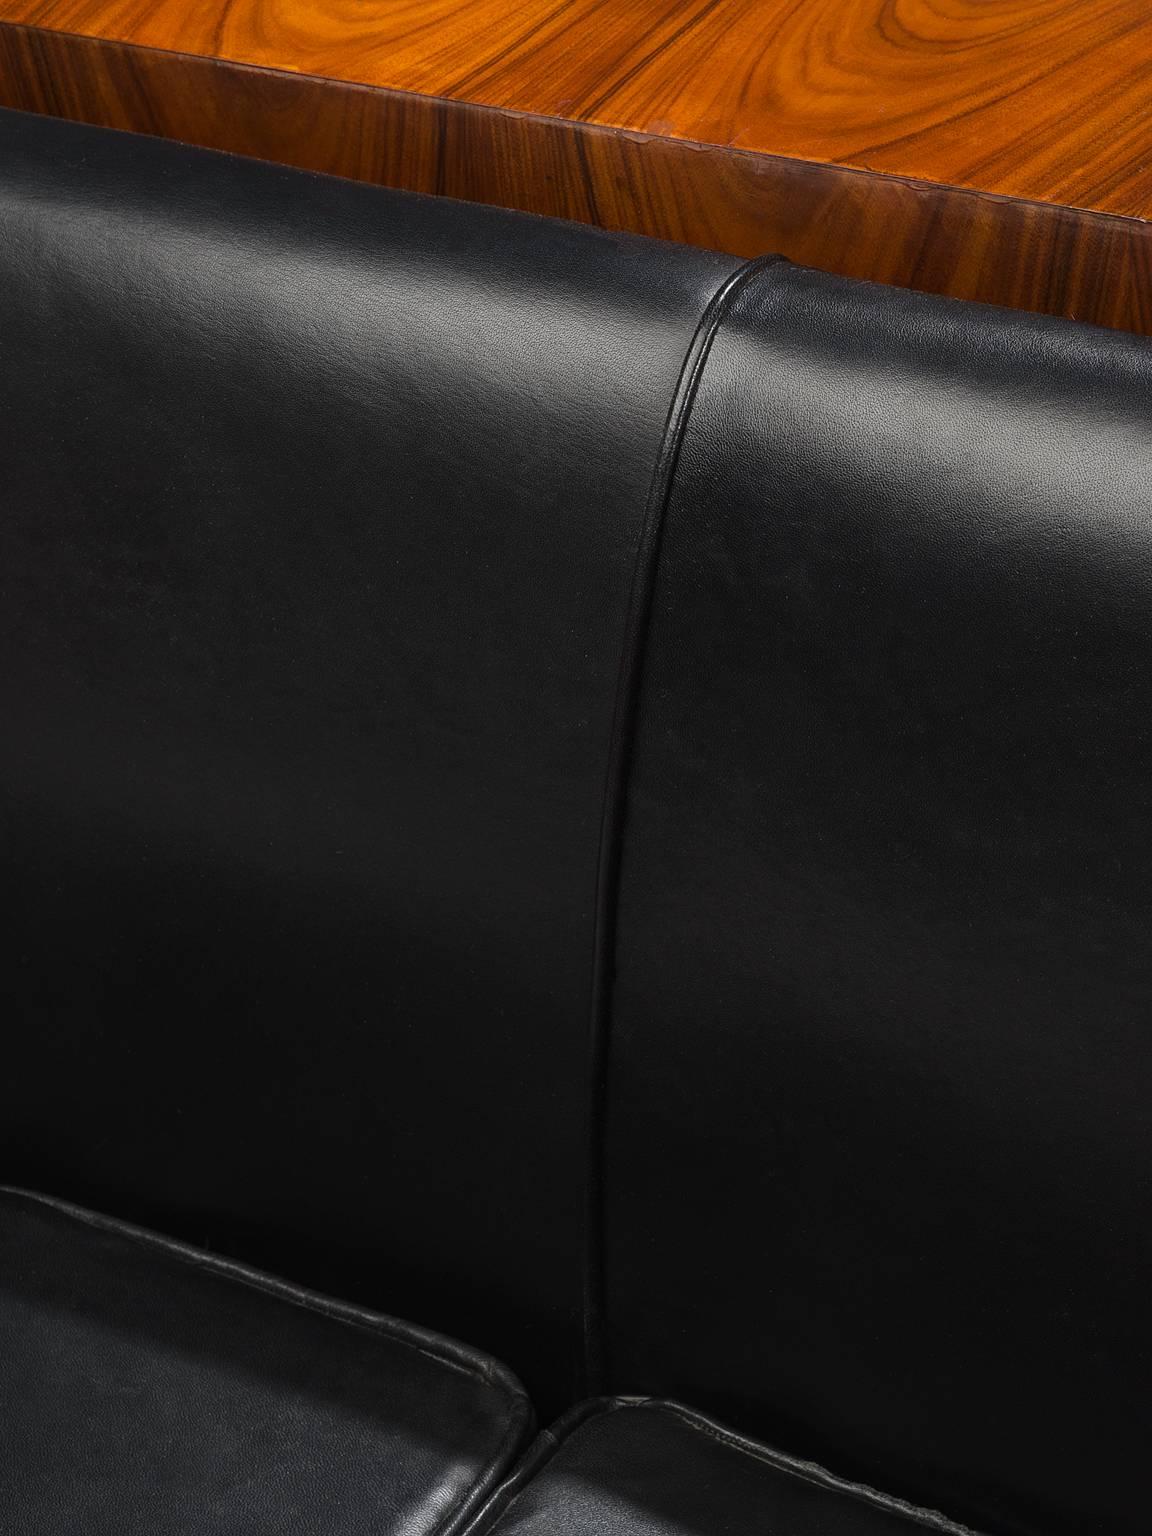 Italian Leather and Rosewood Sofa 2